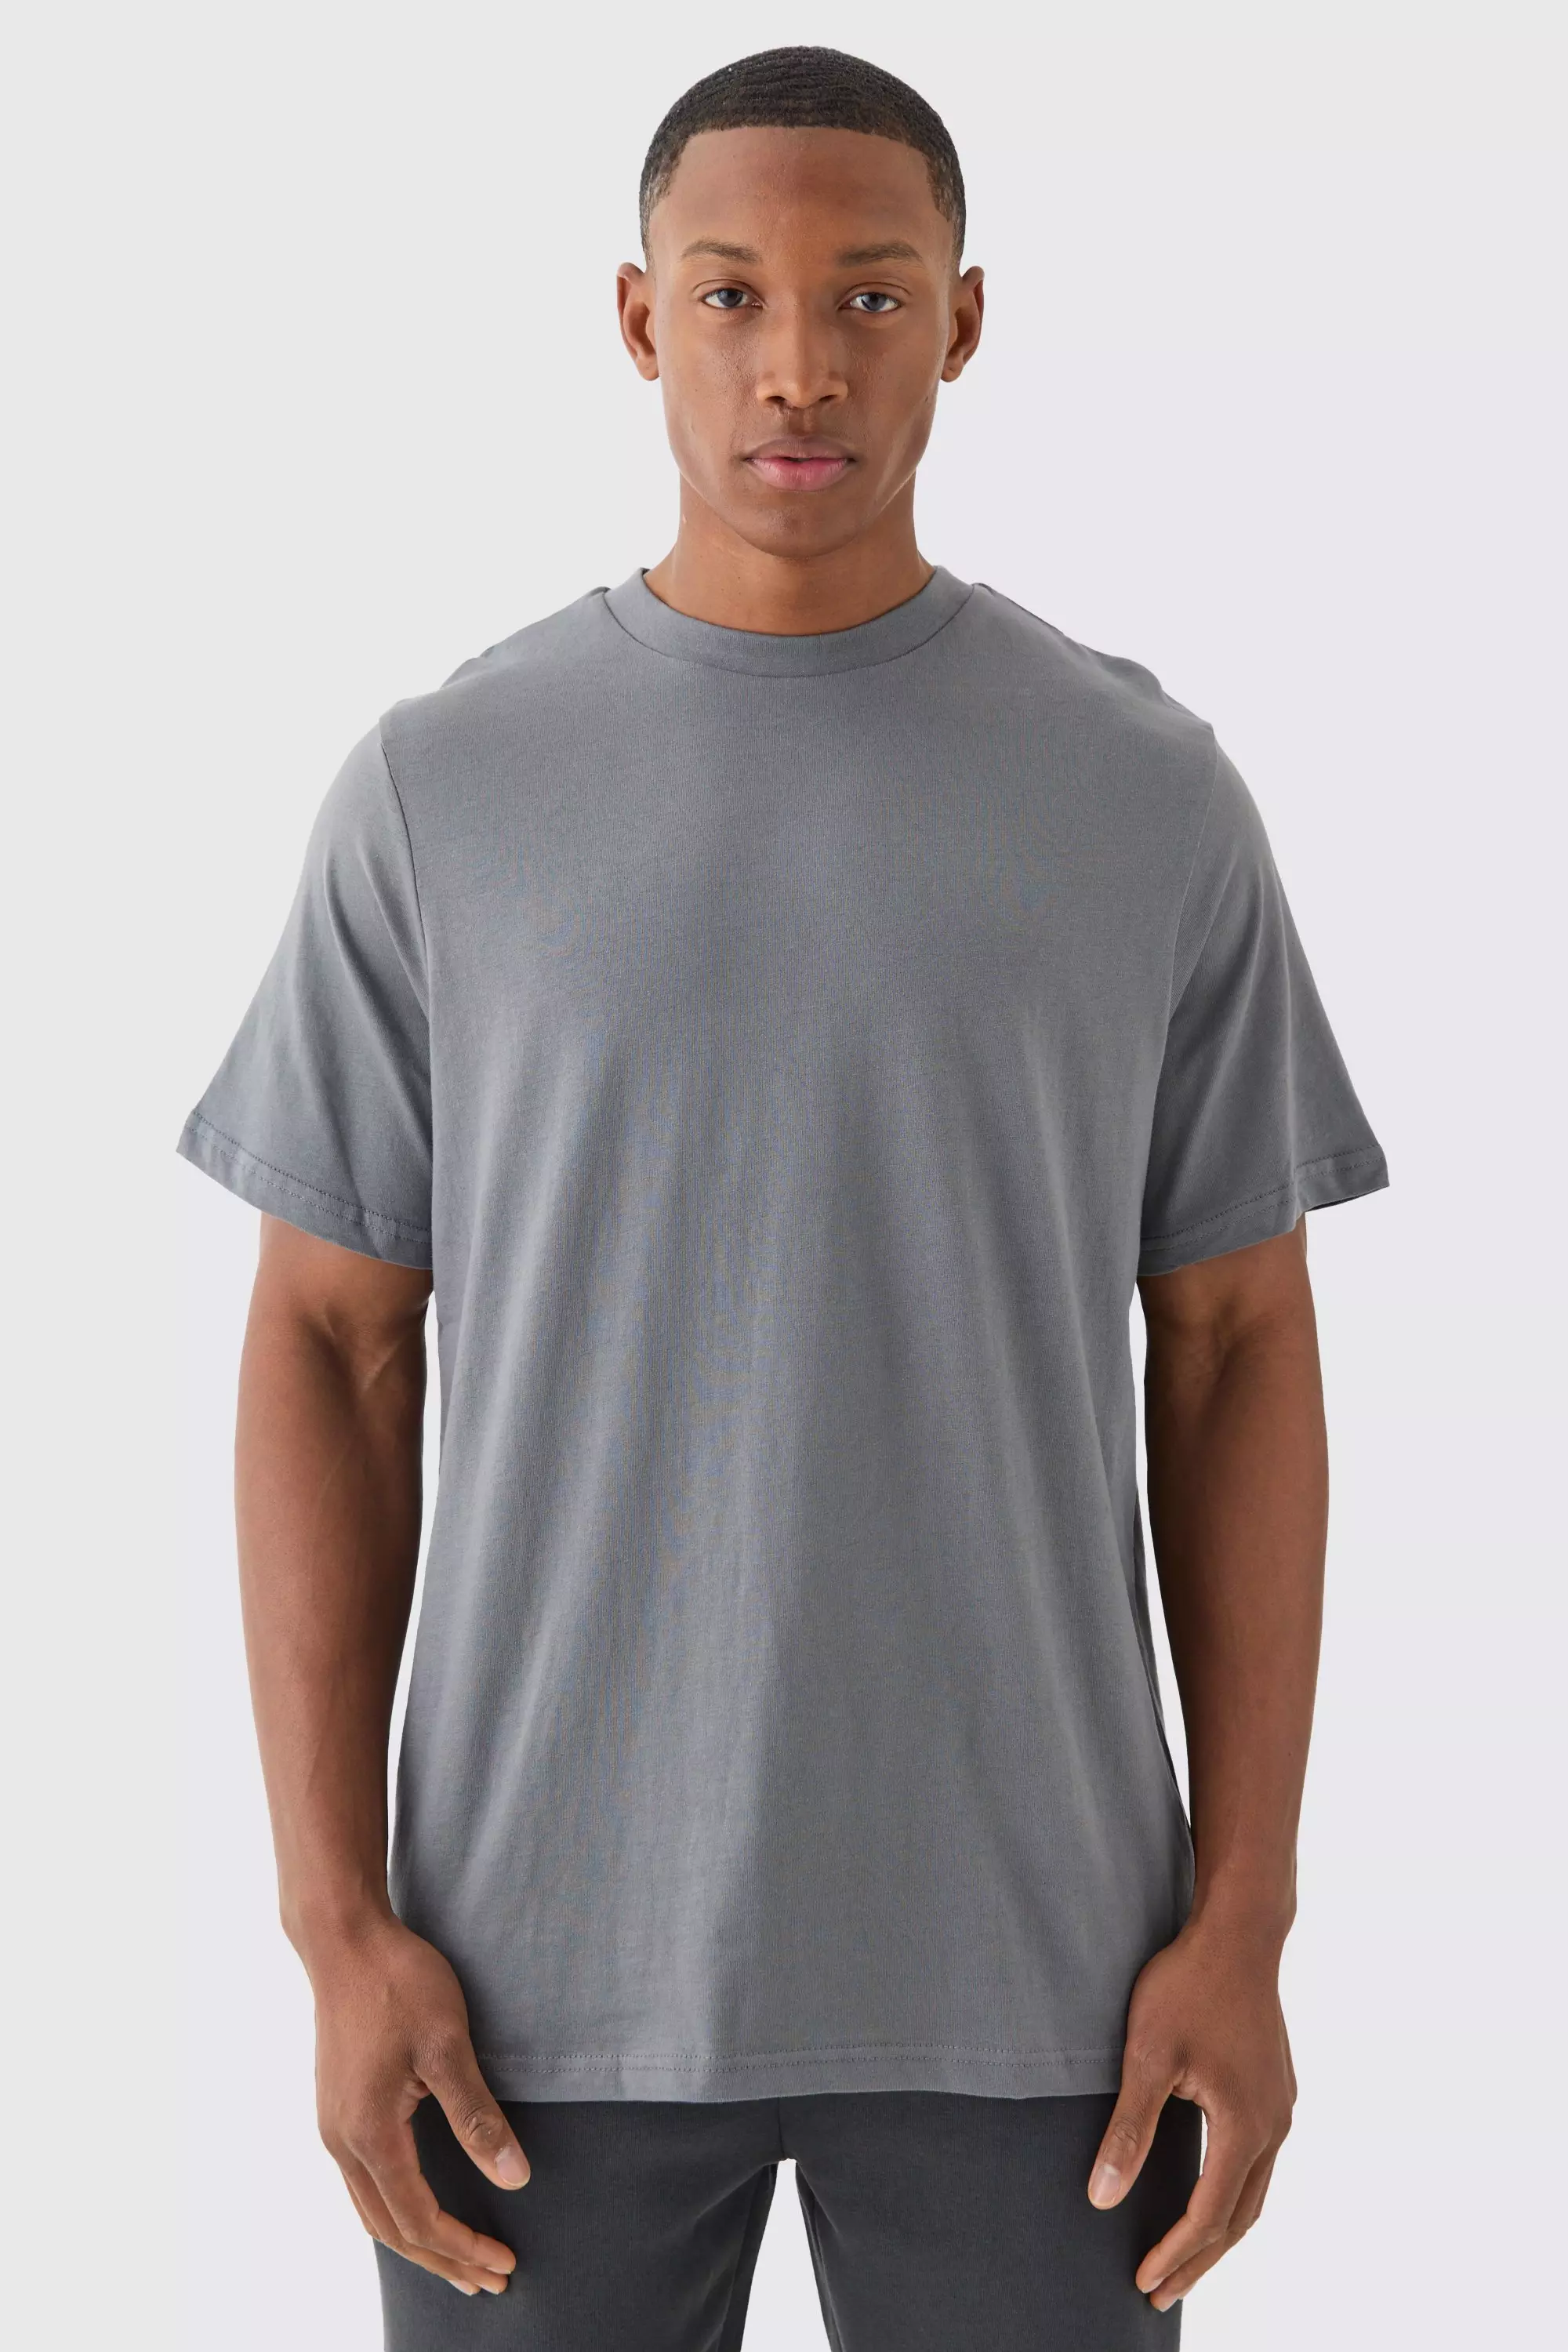 Basic crew neck t-shirt